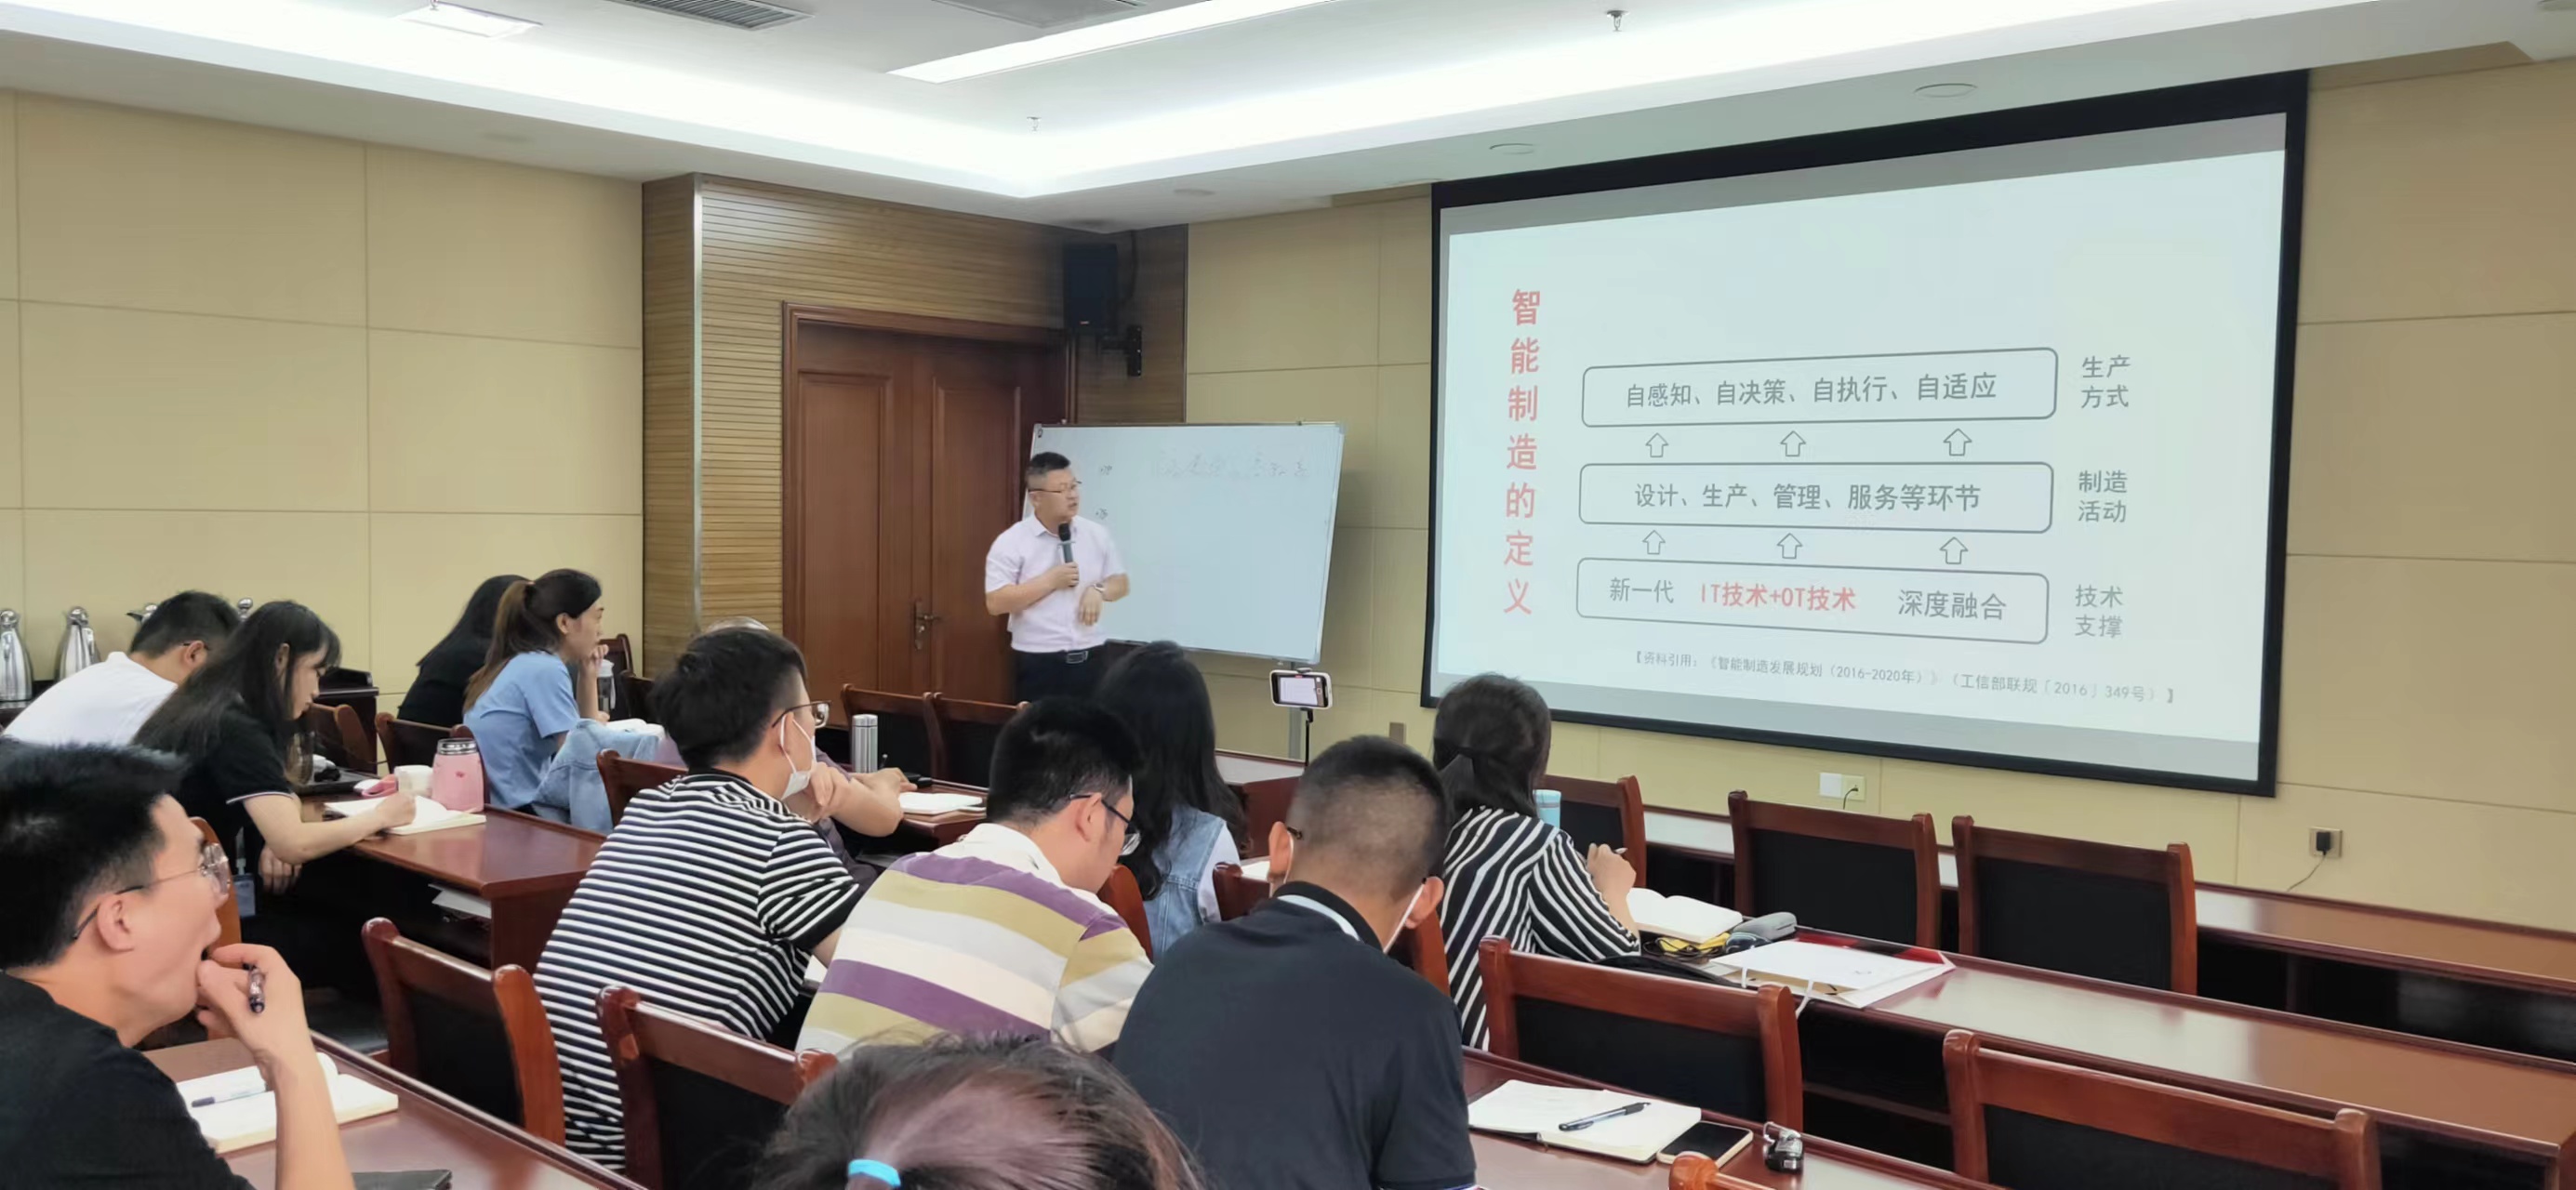 董海滨老师 6月10-11号给山东某工信局讲授《智能制造与智能工厂打造》课程